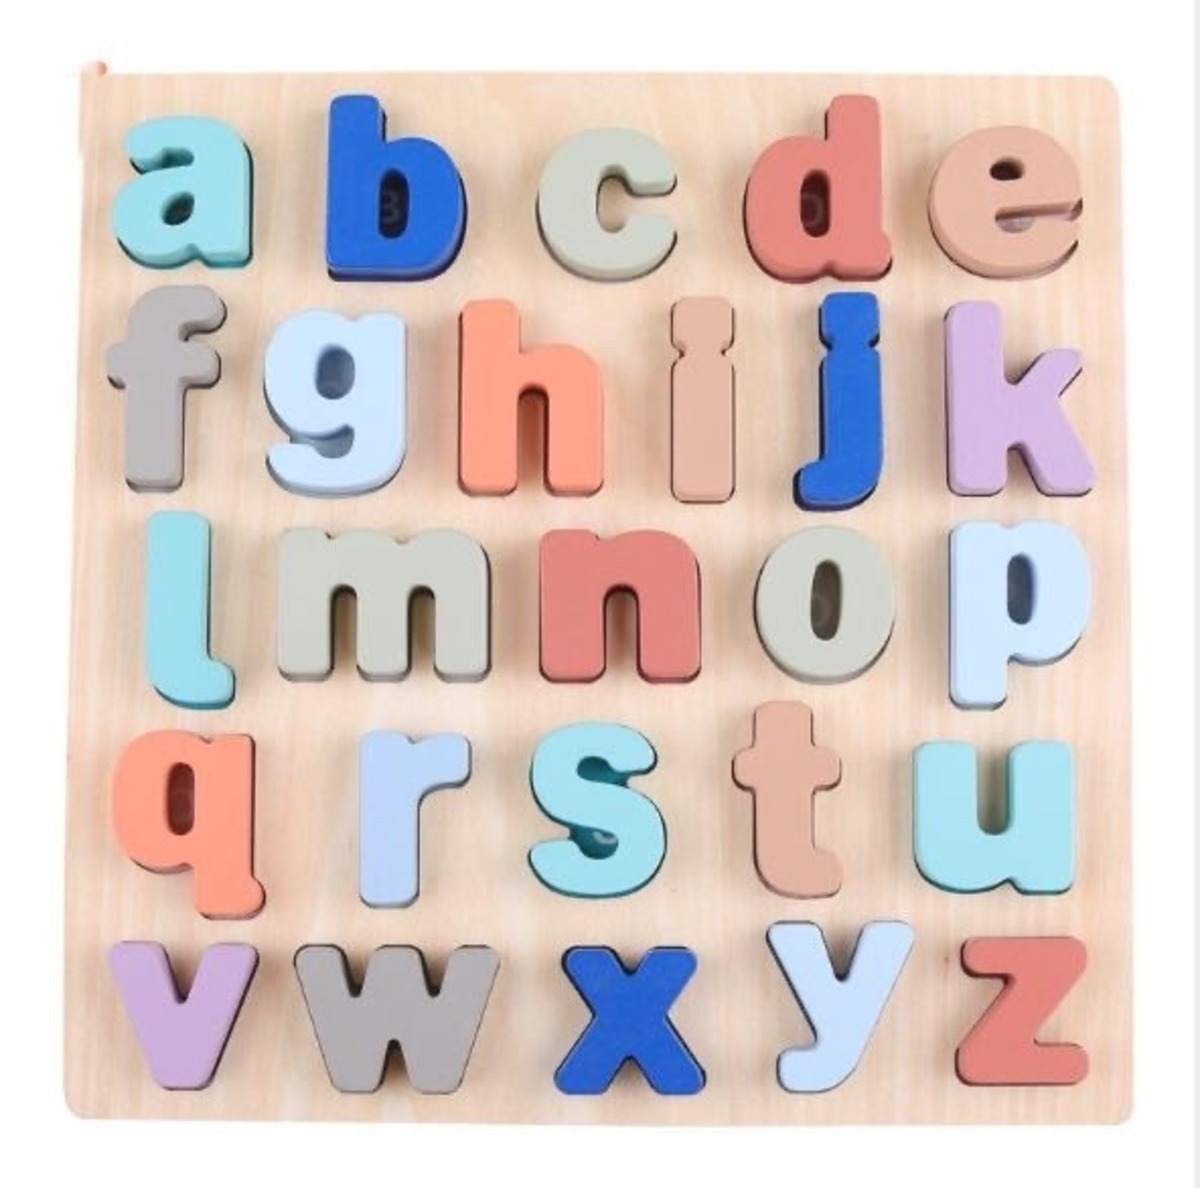 アルファベットパズル 小文字 知育玩具 モンテッソーリ 木製パズル 英語 Chi2n Pui2